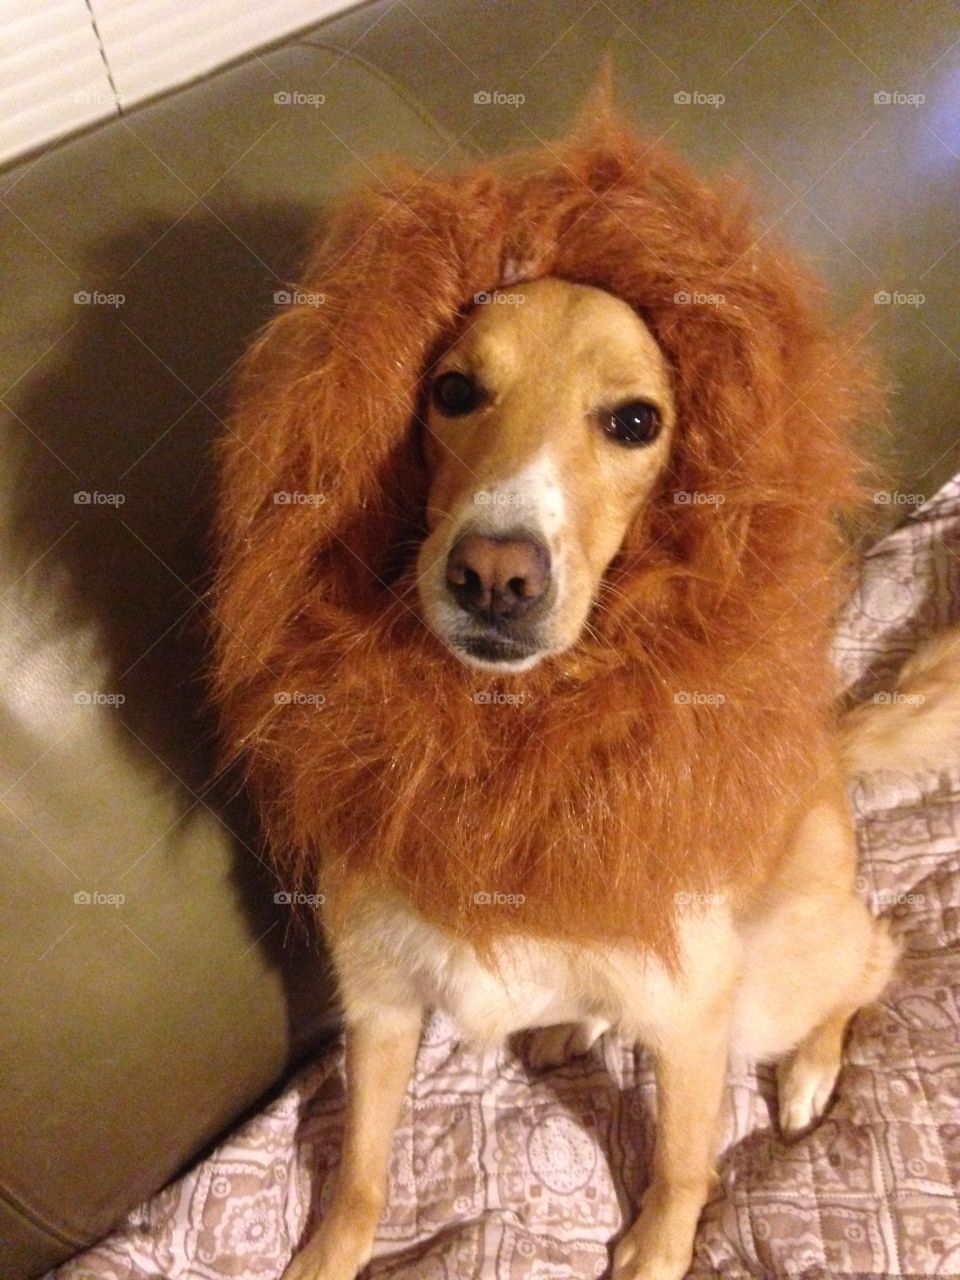 Hear me roar!  Dog in lion mane costume.